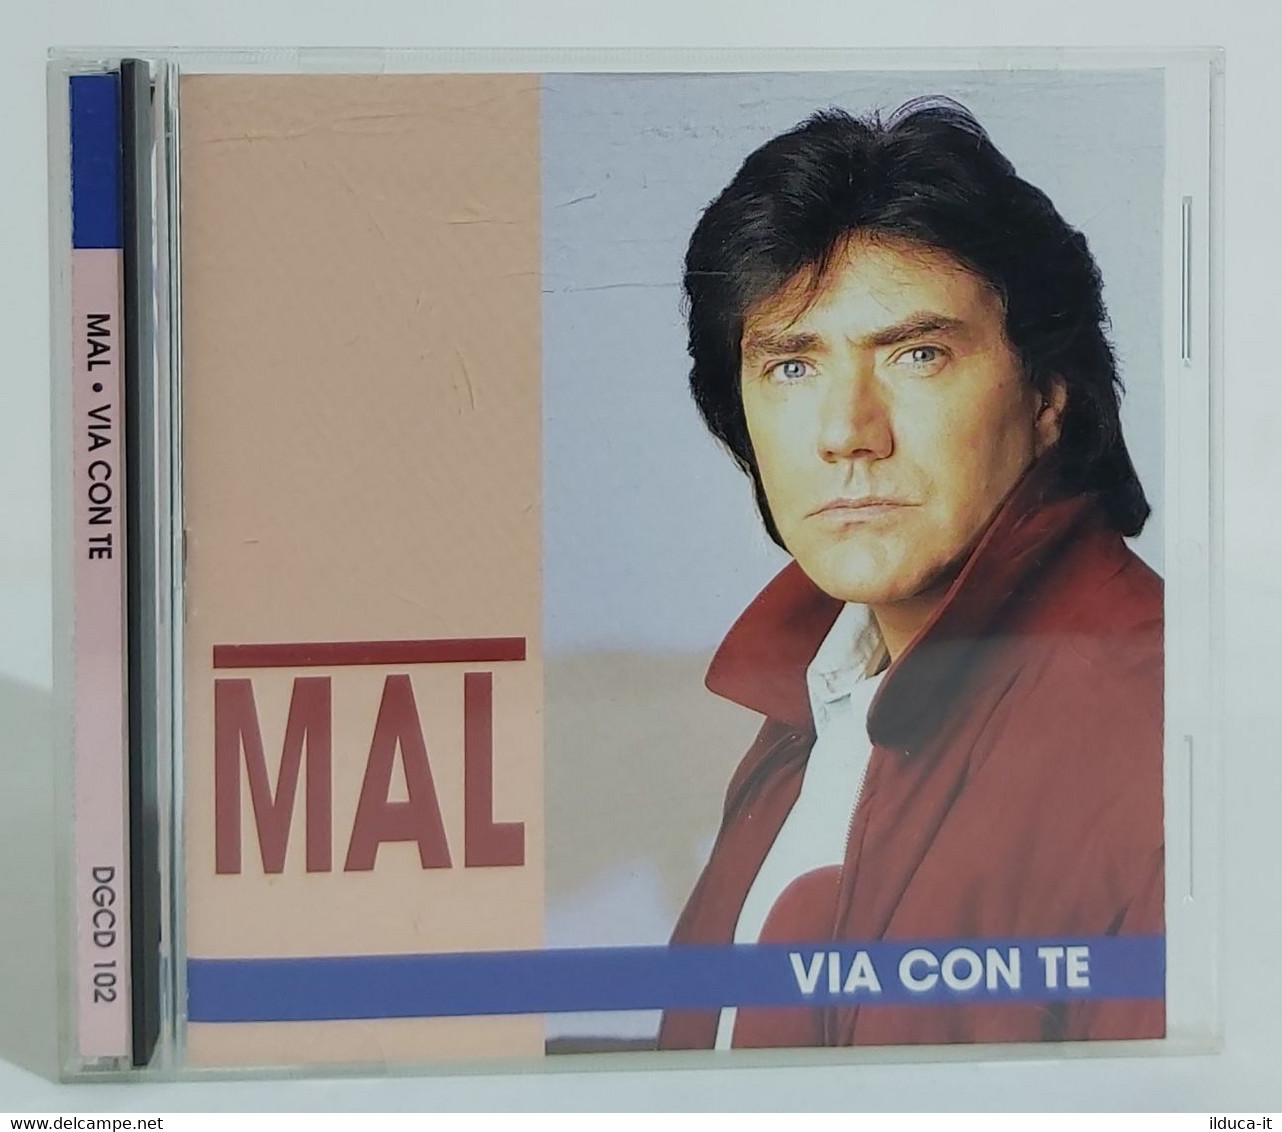 I102309 CD - Mal - Via Con Te - Duck Record 1994 - Autres - Musique Italienne